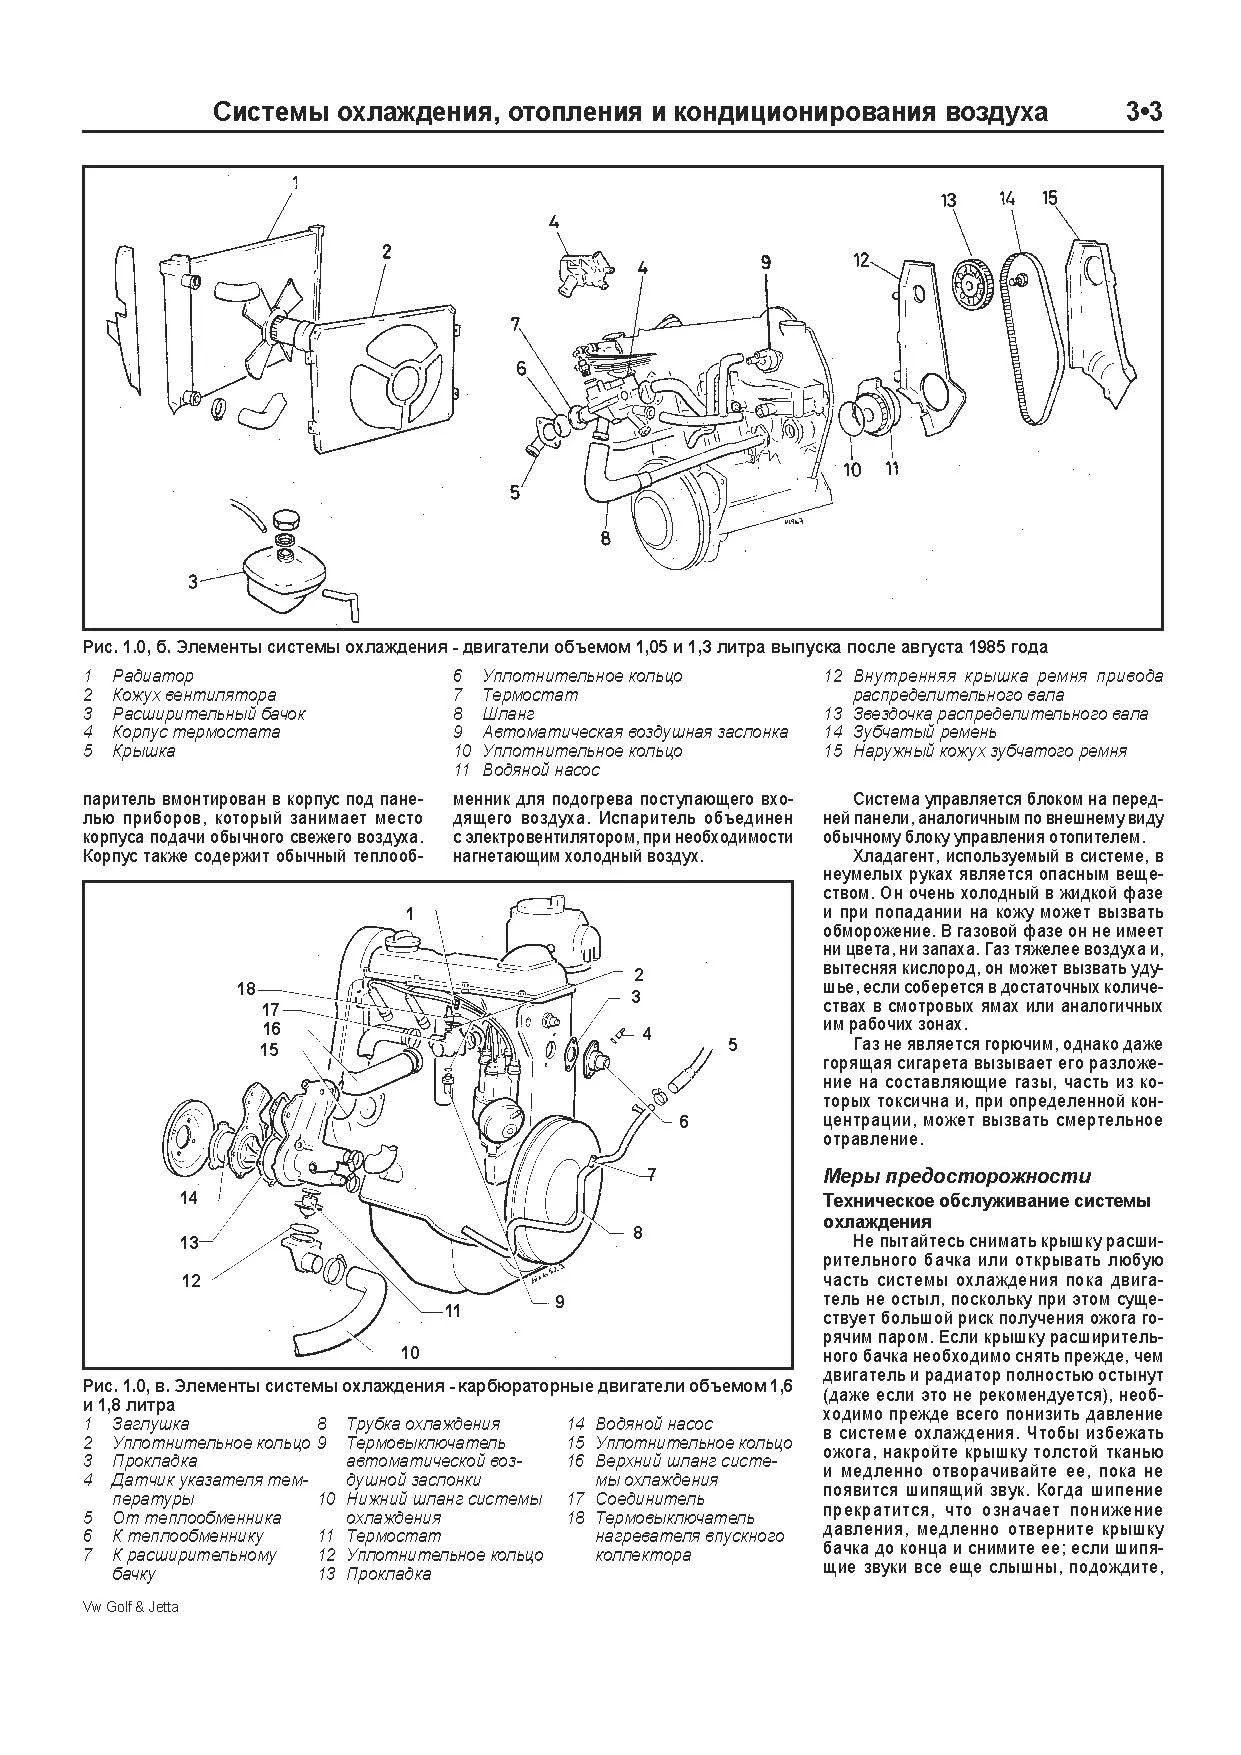 Книга Volkswagen Golf 2, Jetta 2 1984-1992 бензин, электросхемы, ч/б фото. Руководство по ремонту и эксплуатации автомобиля. Легион-Aвтодата